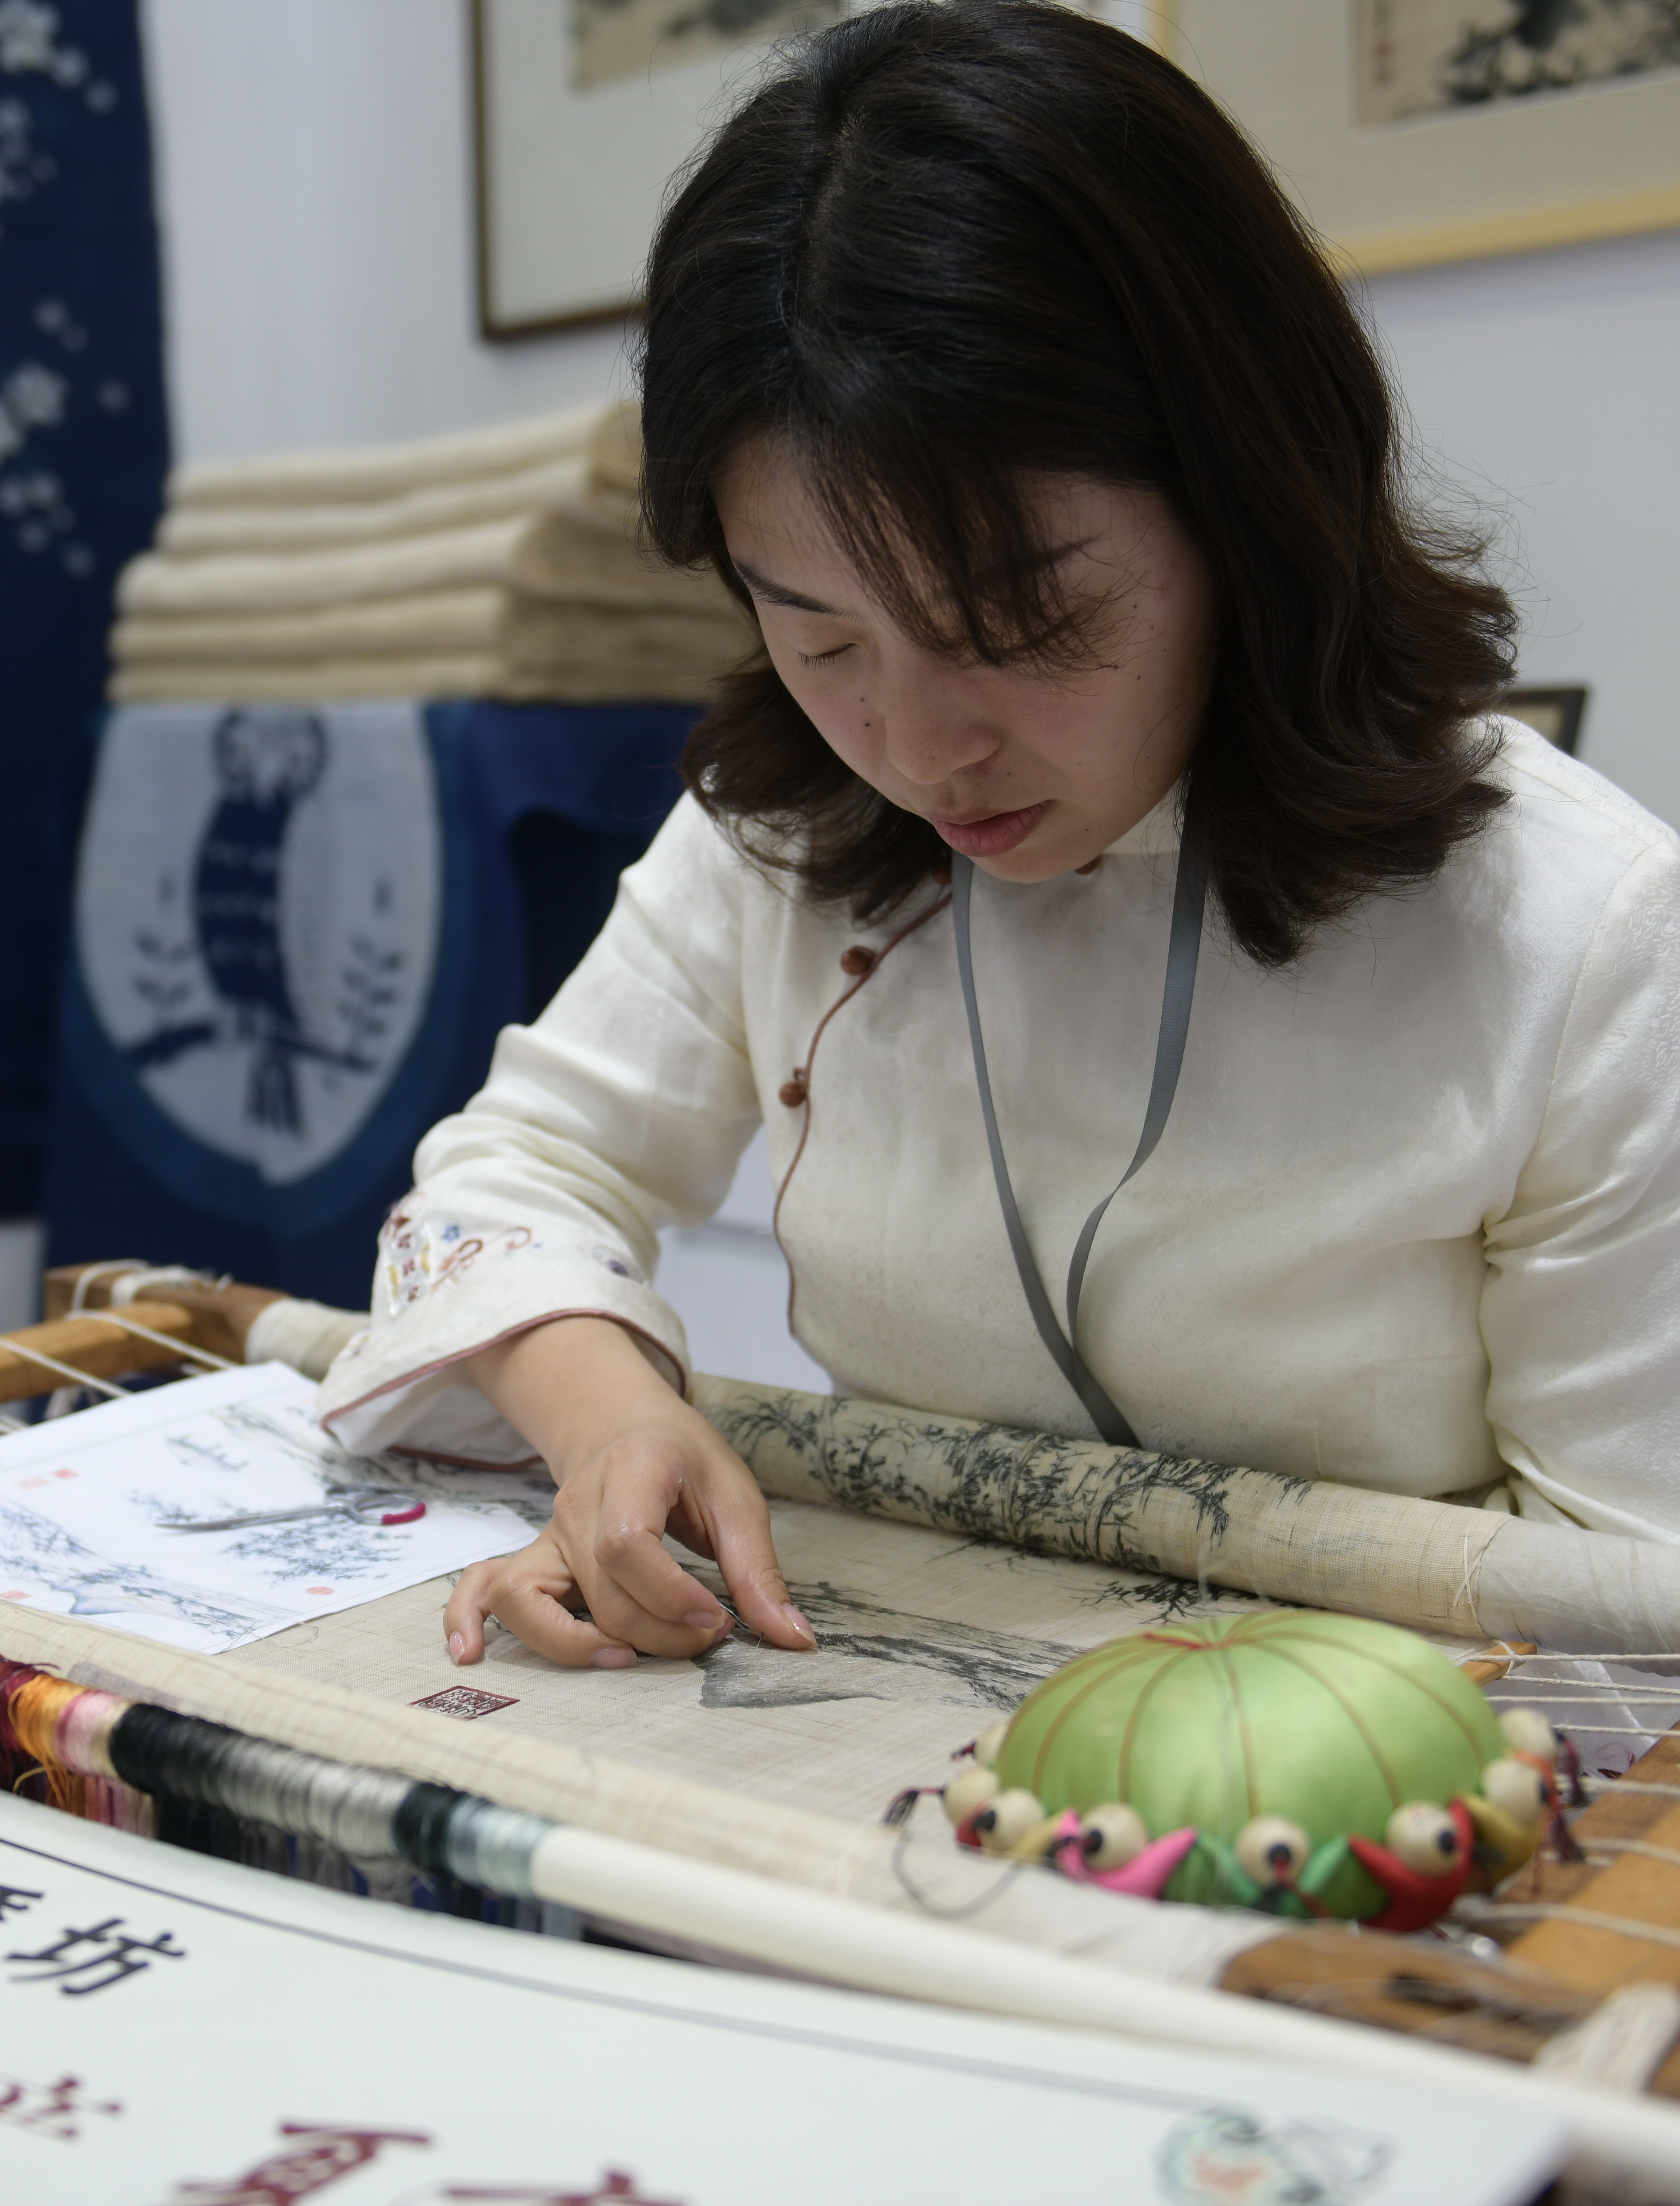 5月17日,来自江西的夏布绣艺人吴婉菁在展示夏布绣技艺